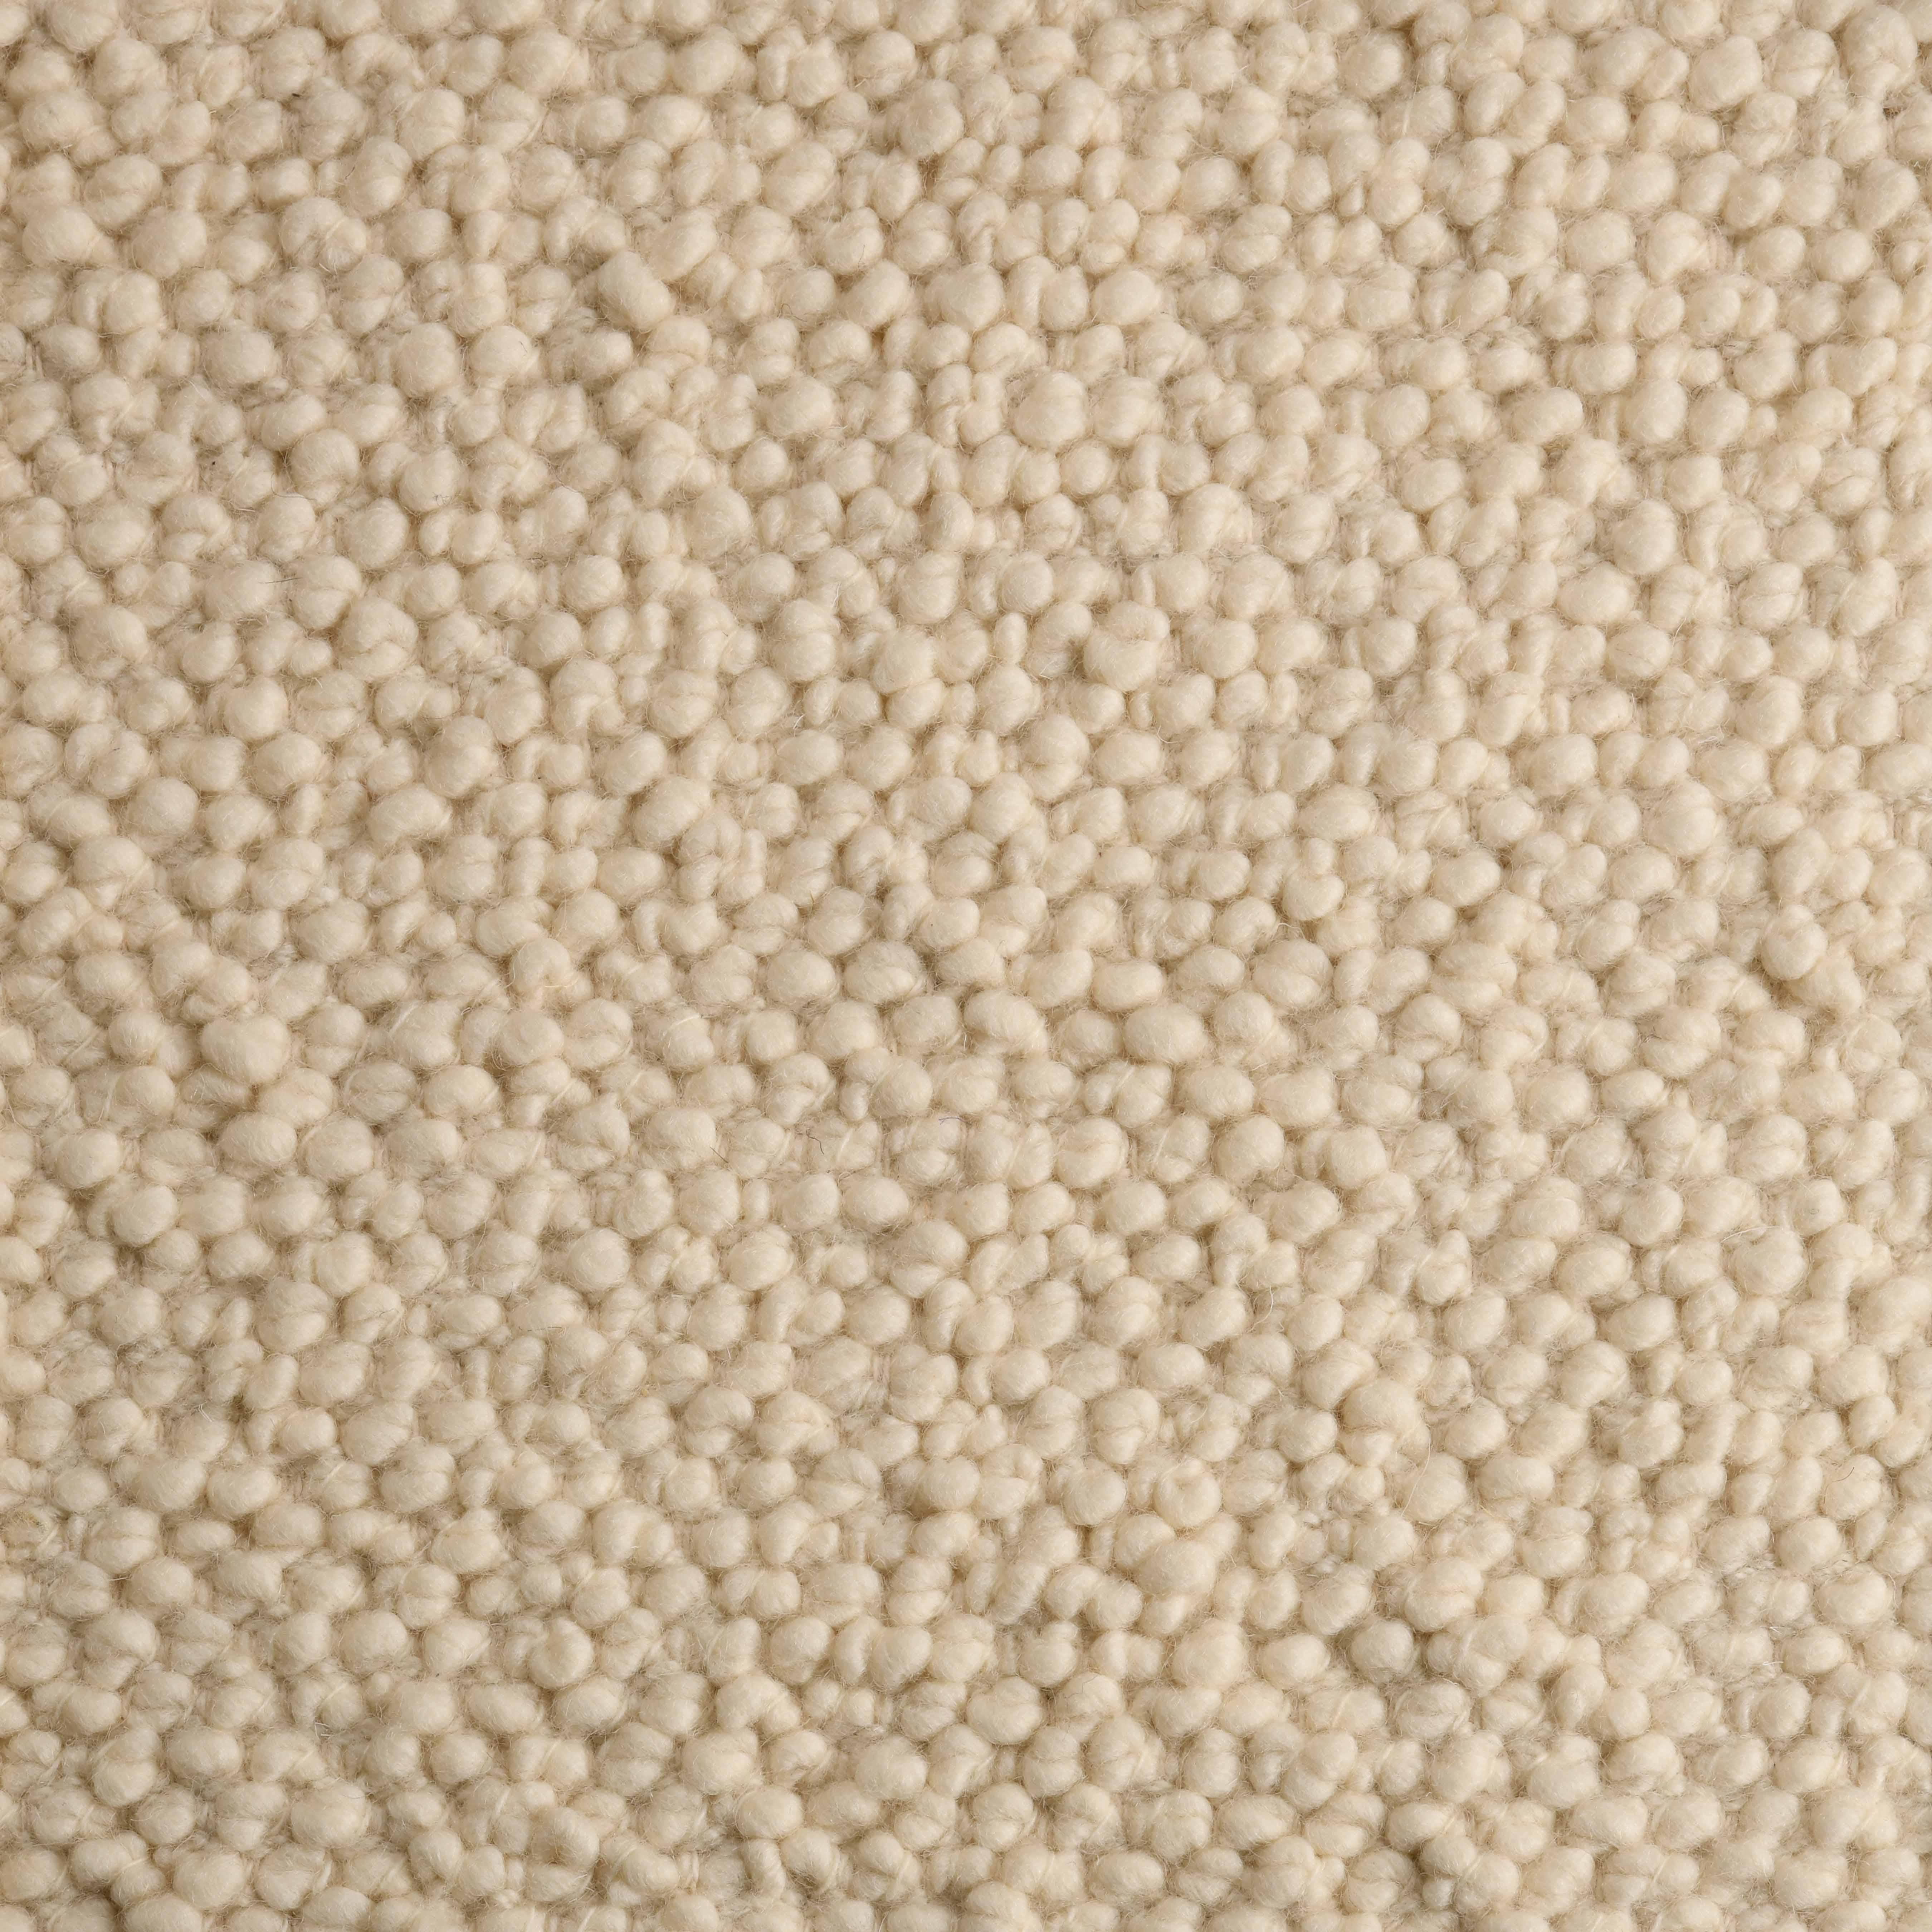 Ossum, Ecru, Handwoven Face100% New Zealand Wool, 8' x 10'